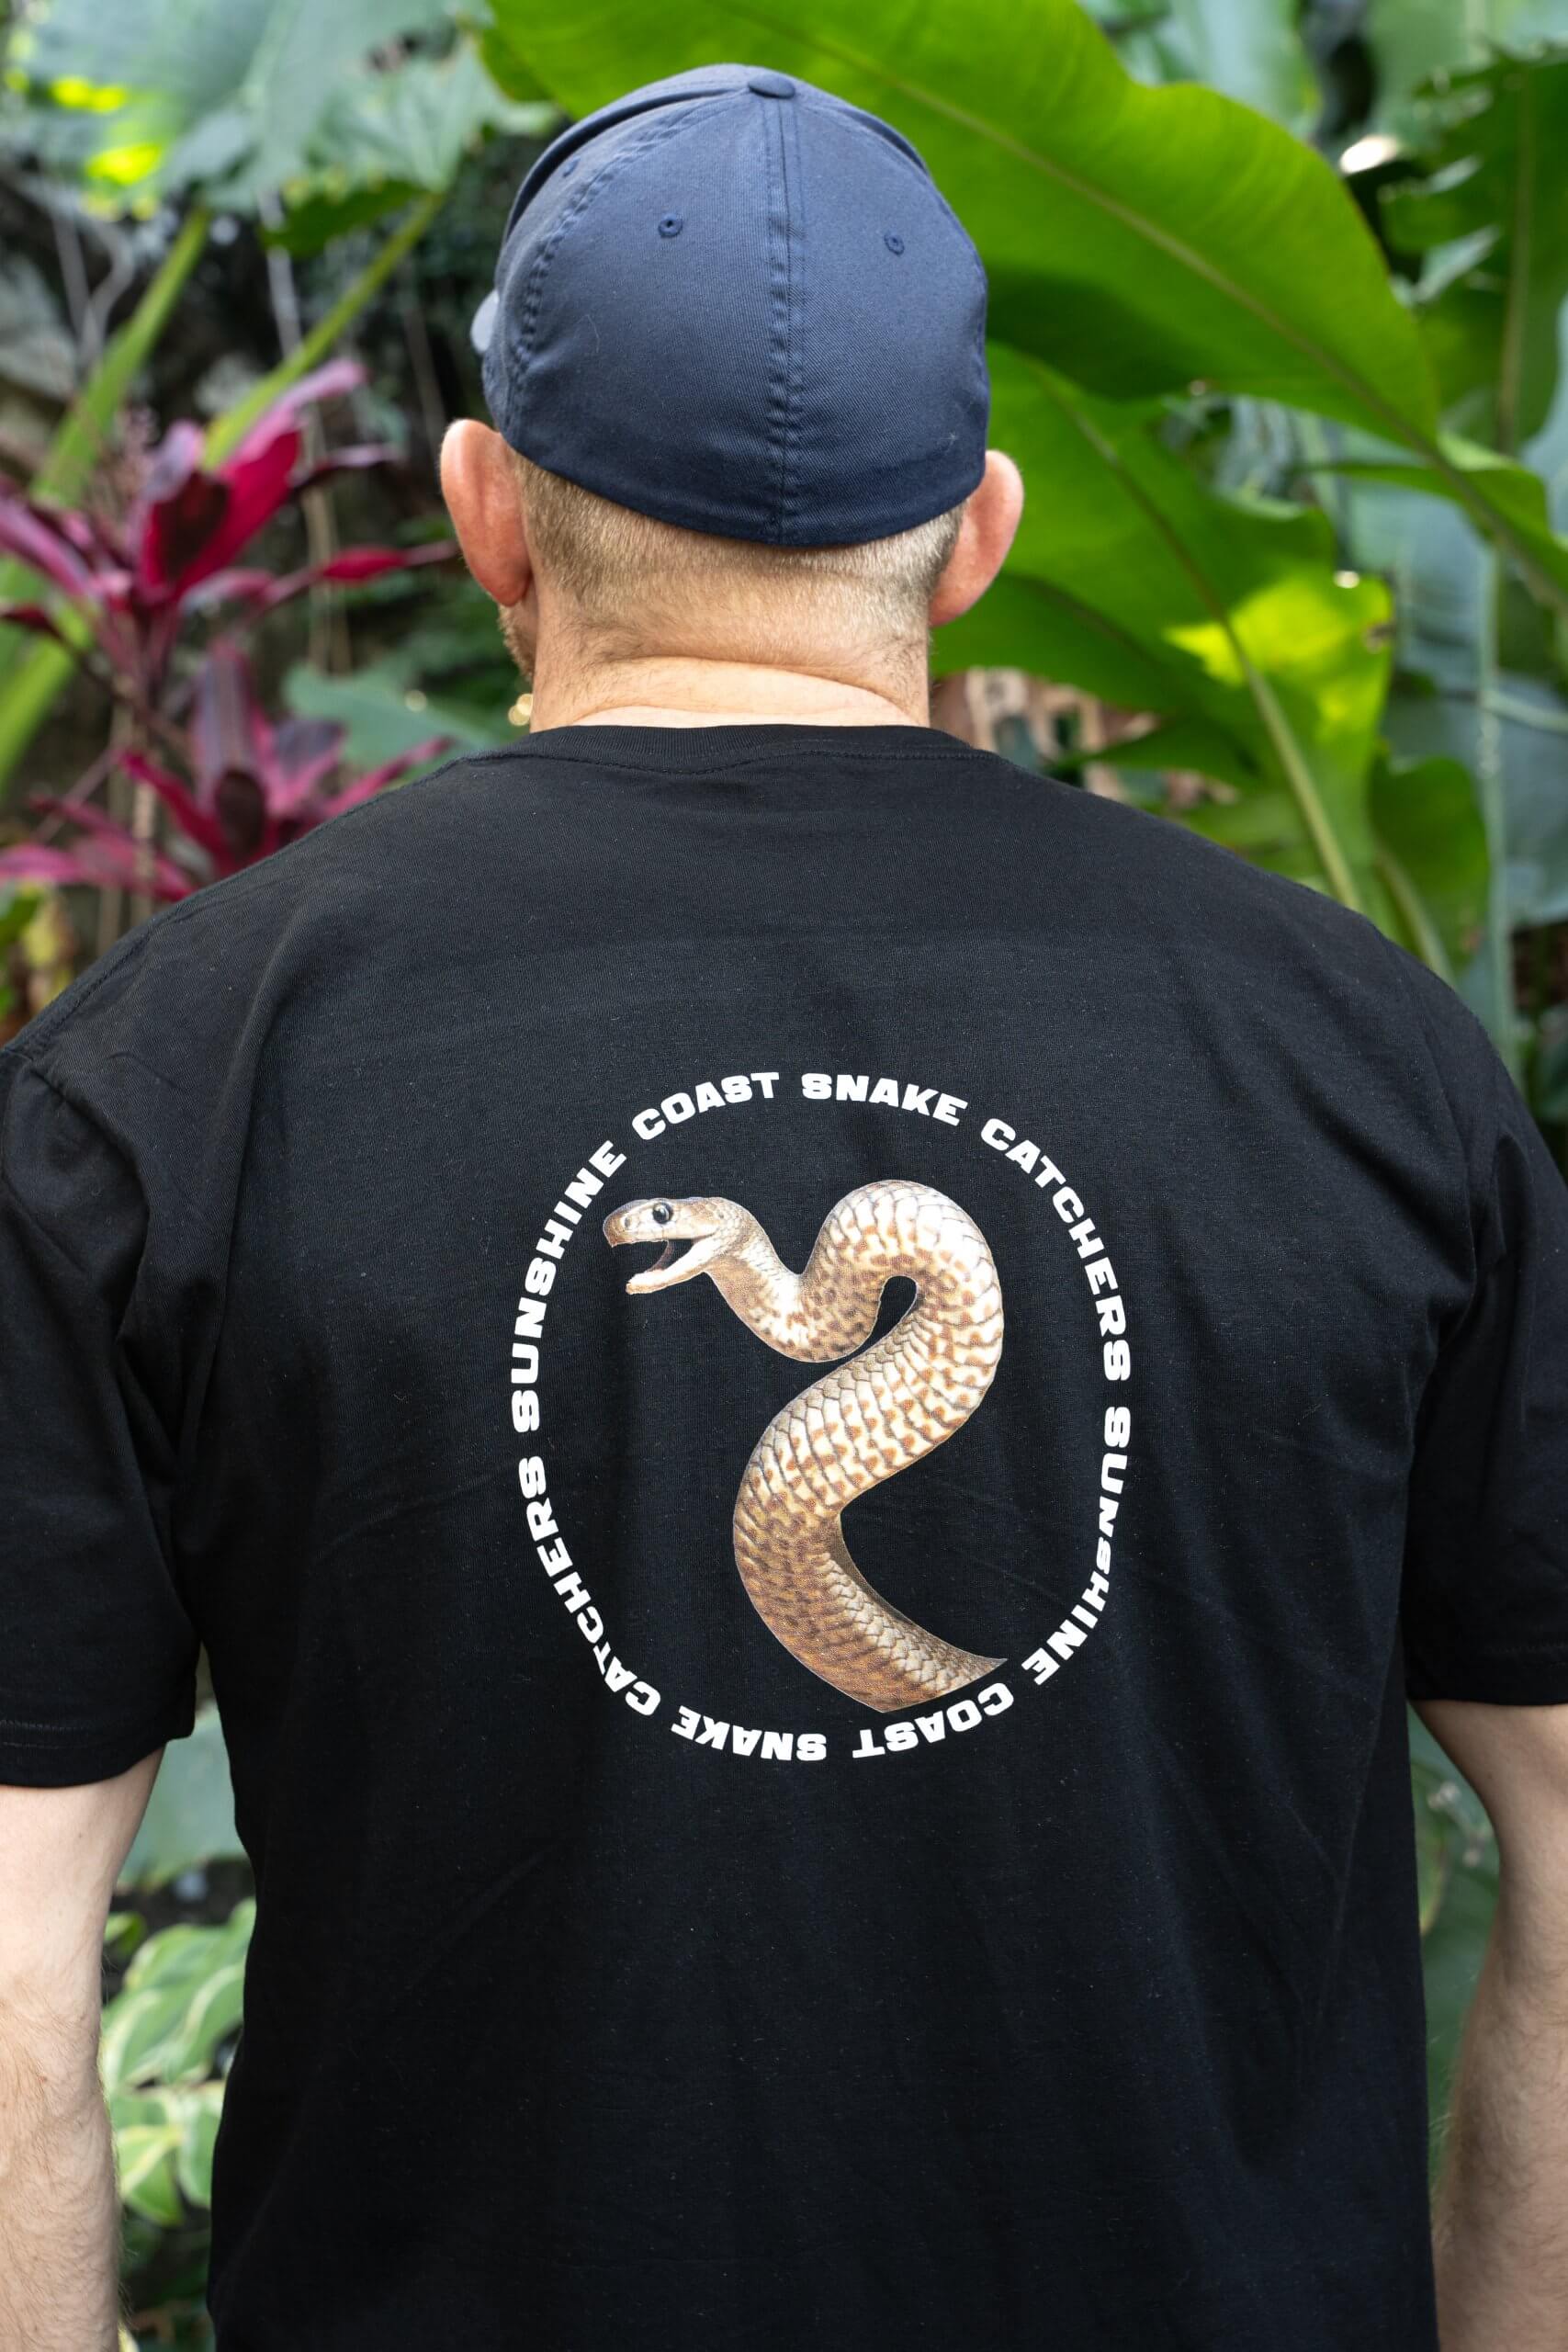 Respect Snakes Black T-Shirt - The Snake Catcher